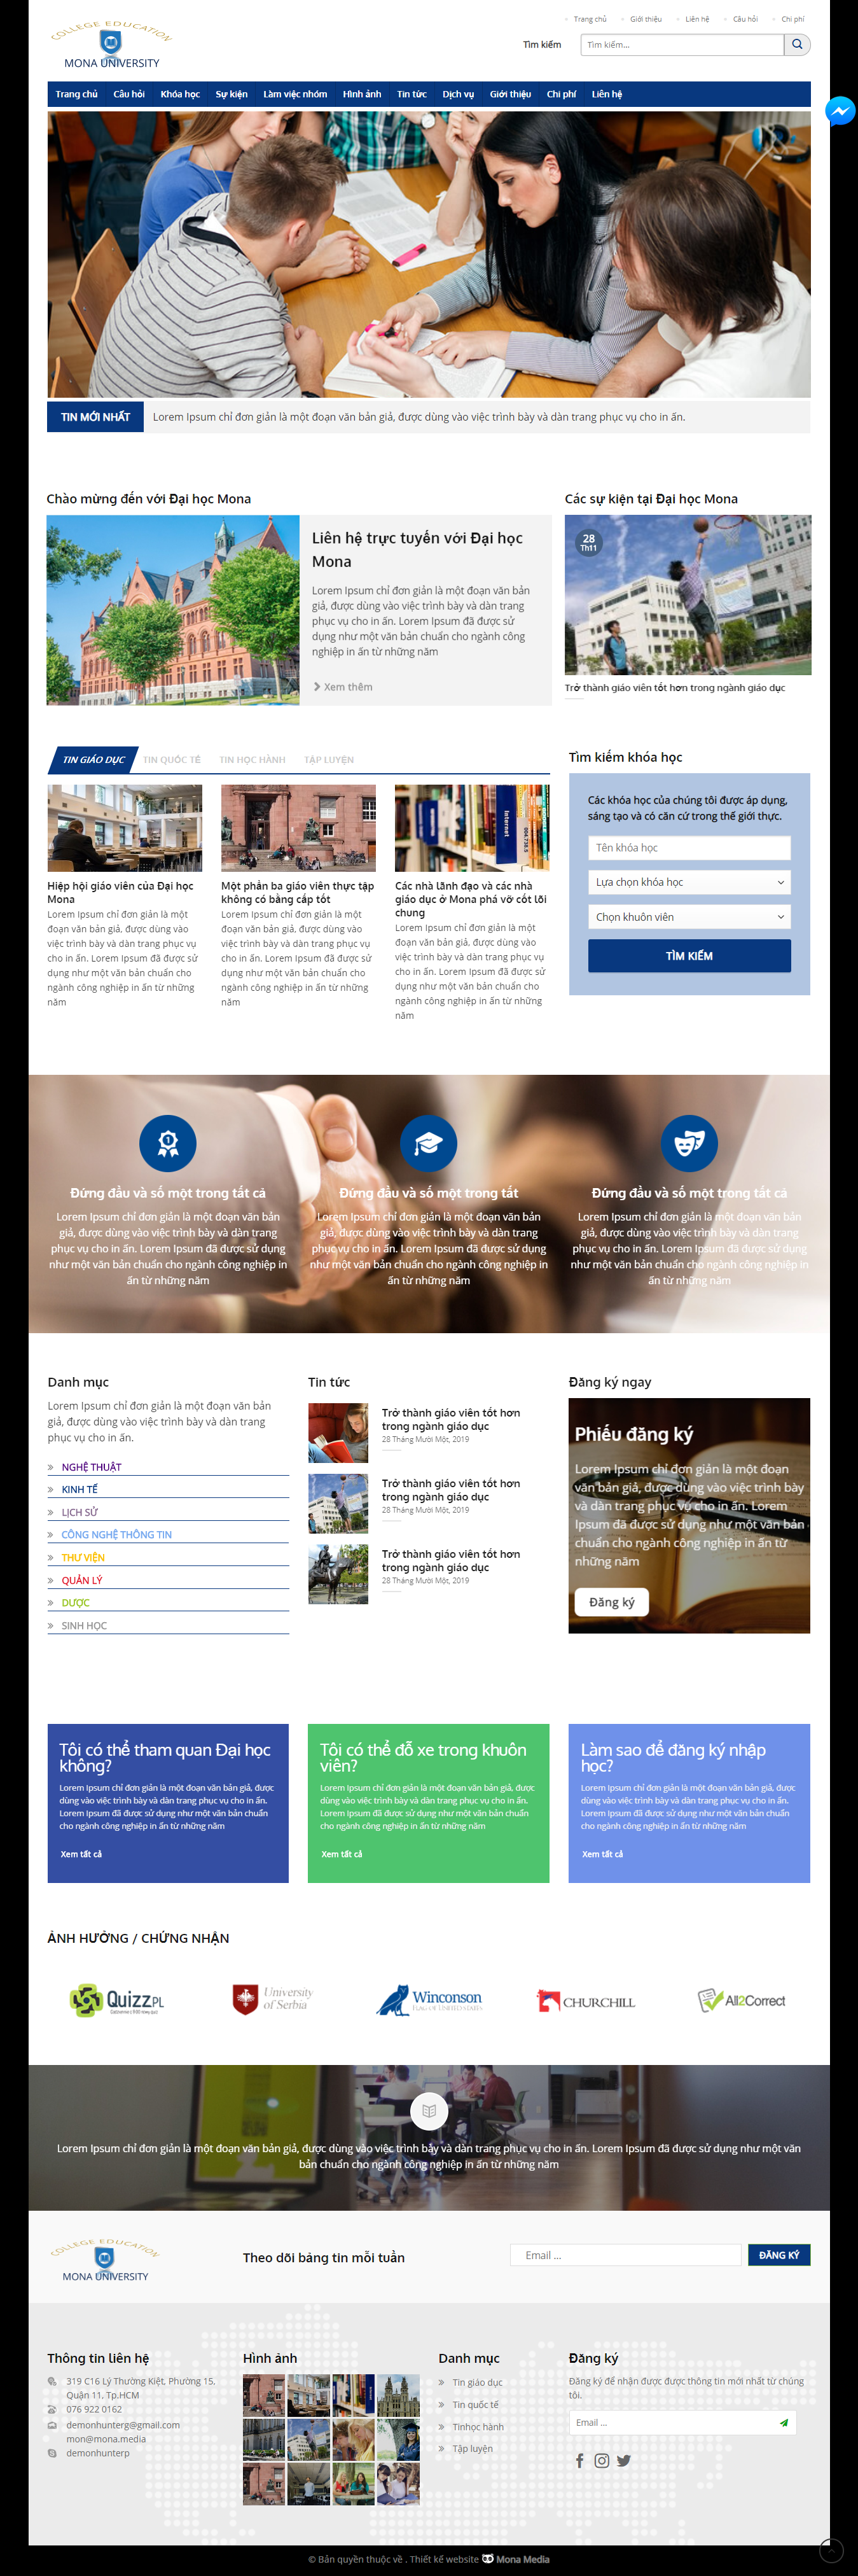 Mẫu website giới thiệu trường đại học cao đẳng trường nghề giao diện 